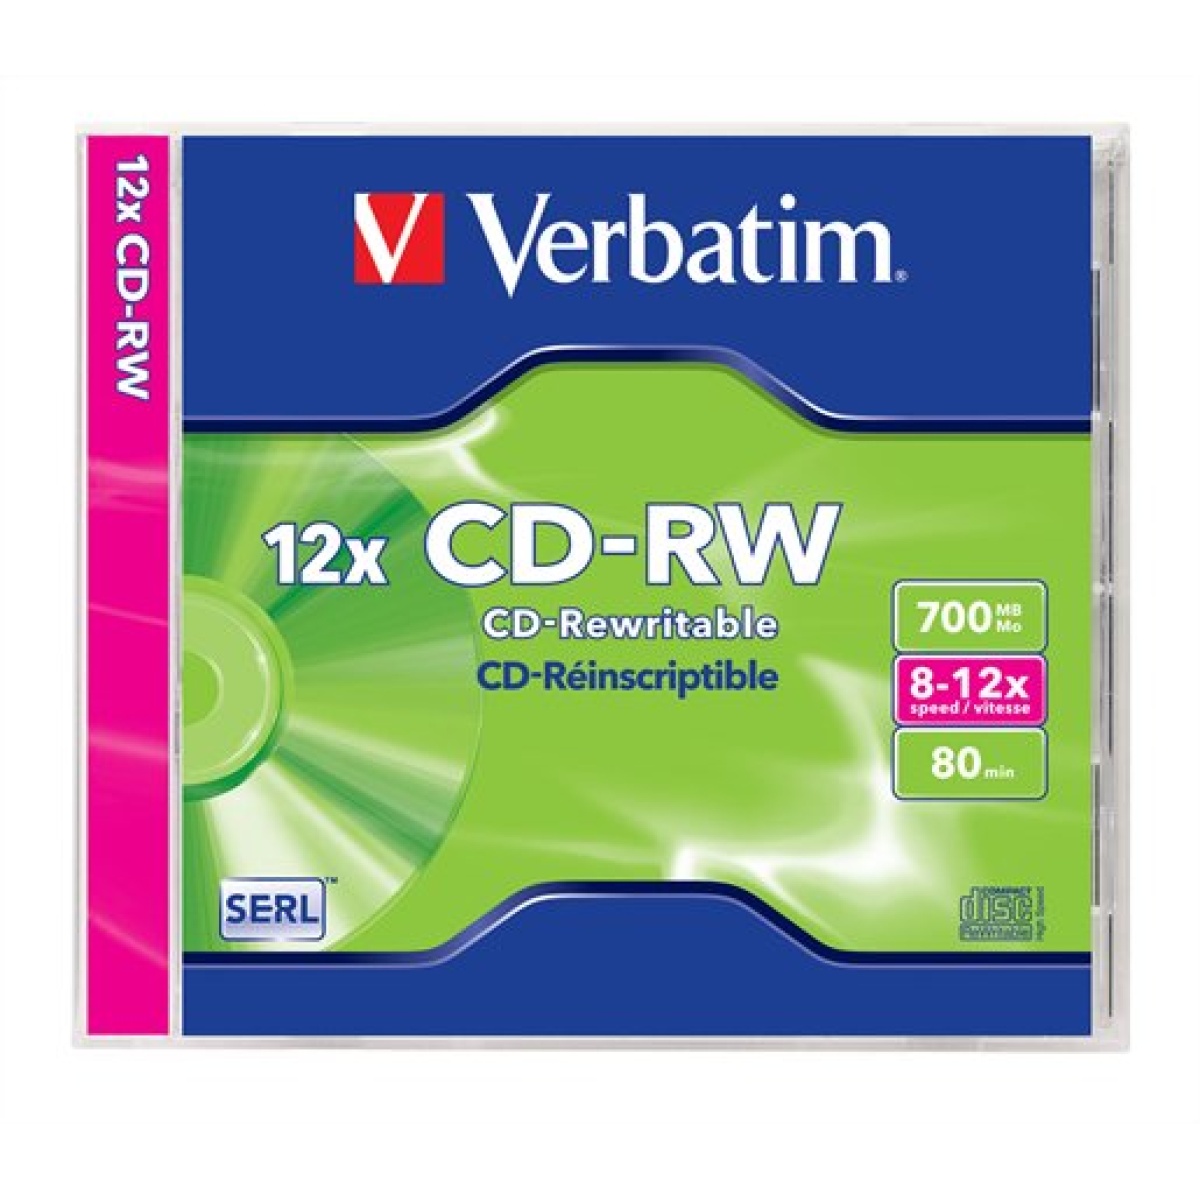 CD-RW lemez újraírható SERL 700MB 8-12x 1 db normál tok VERBATIM